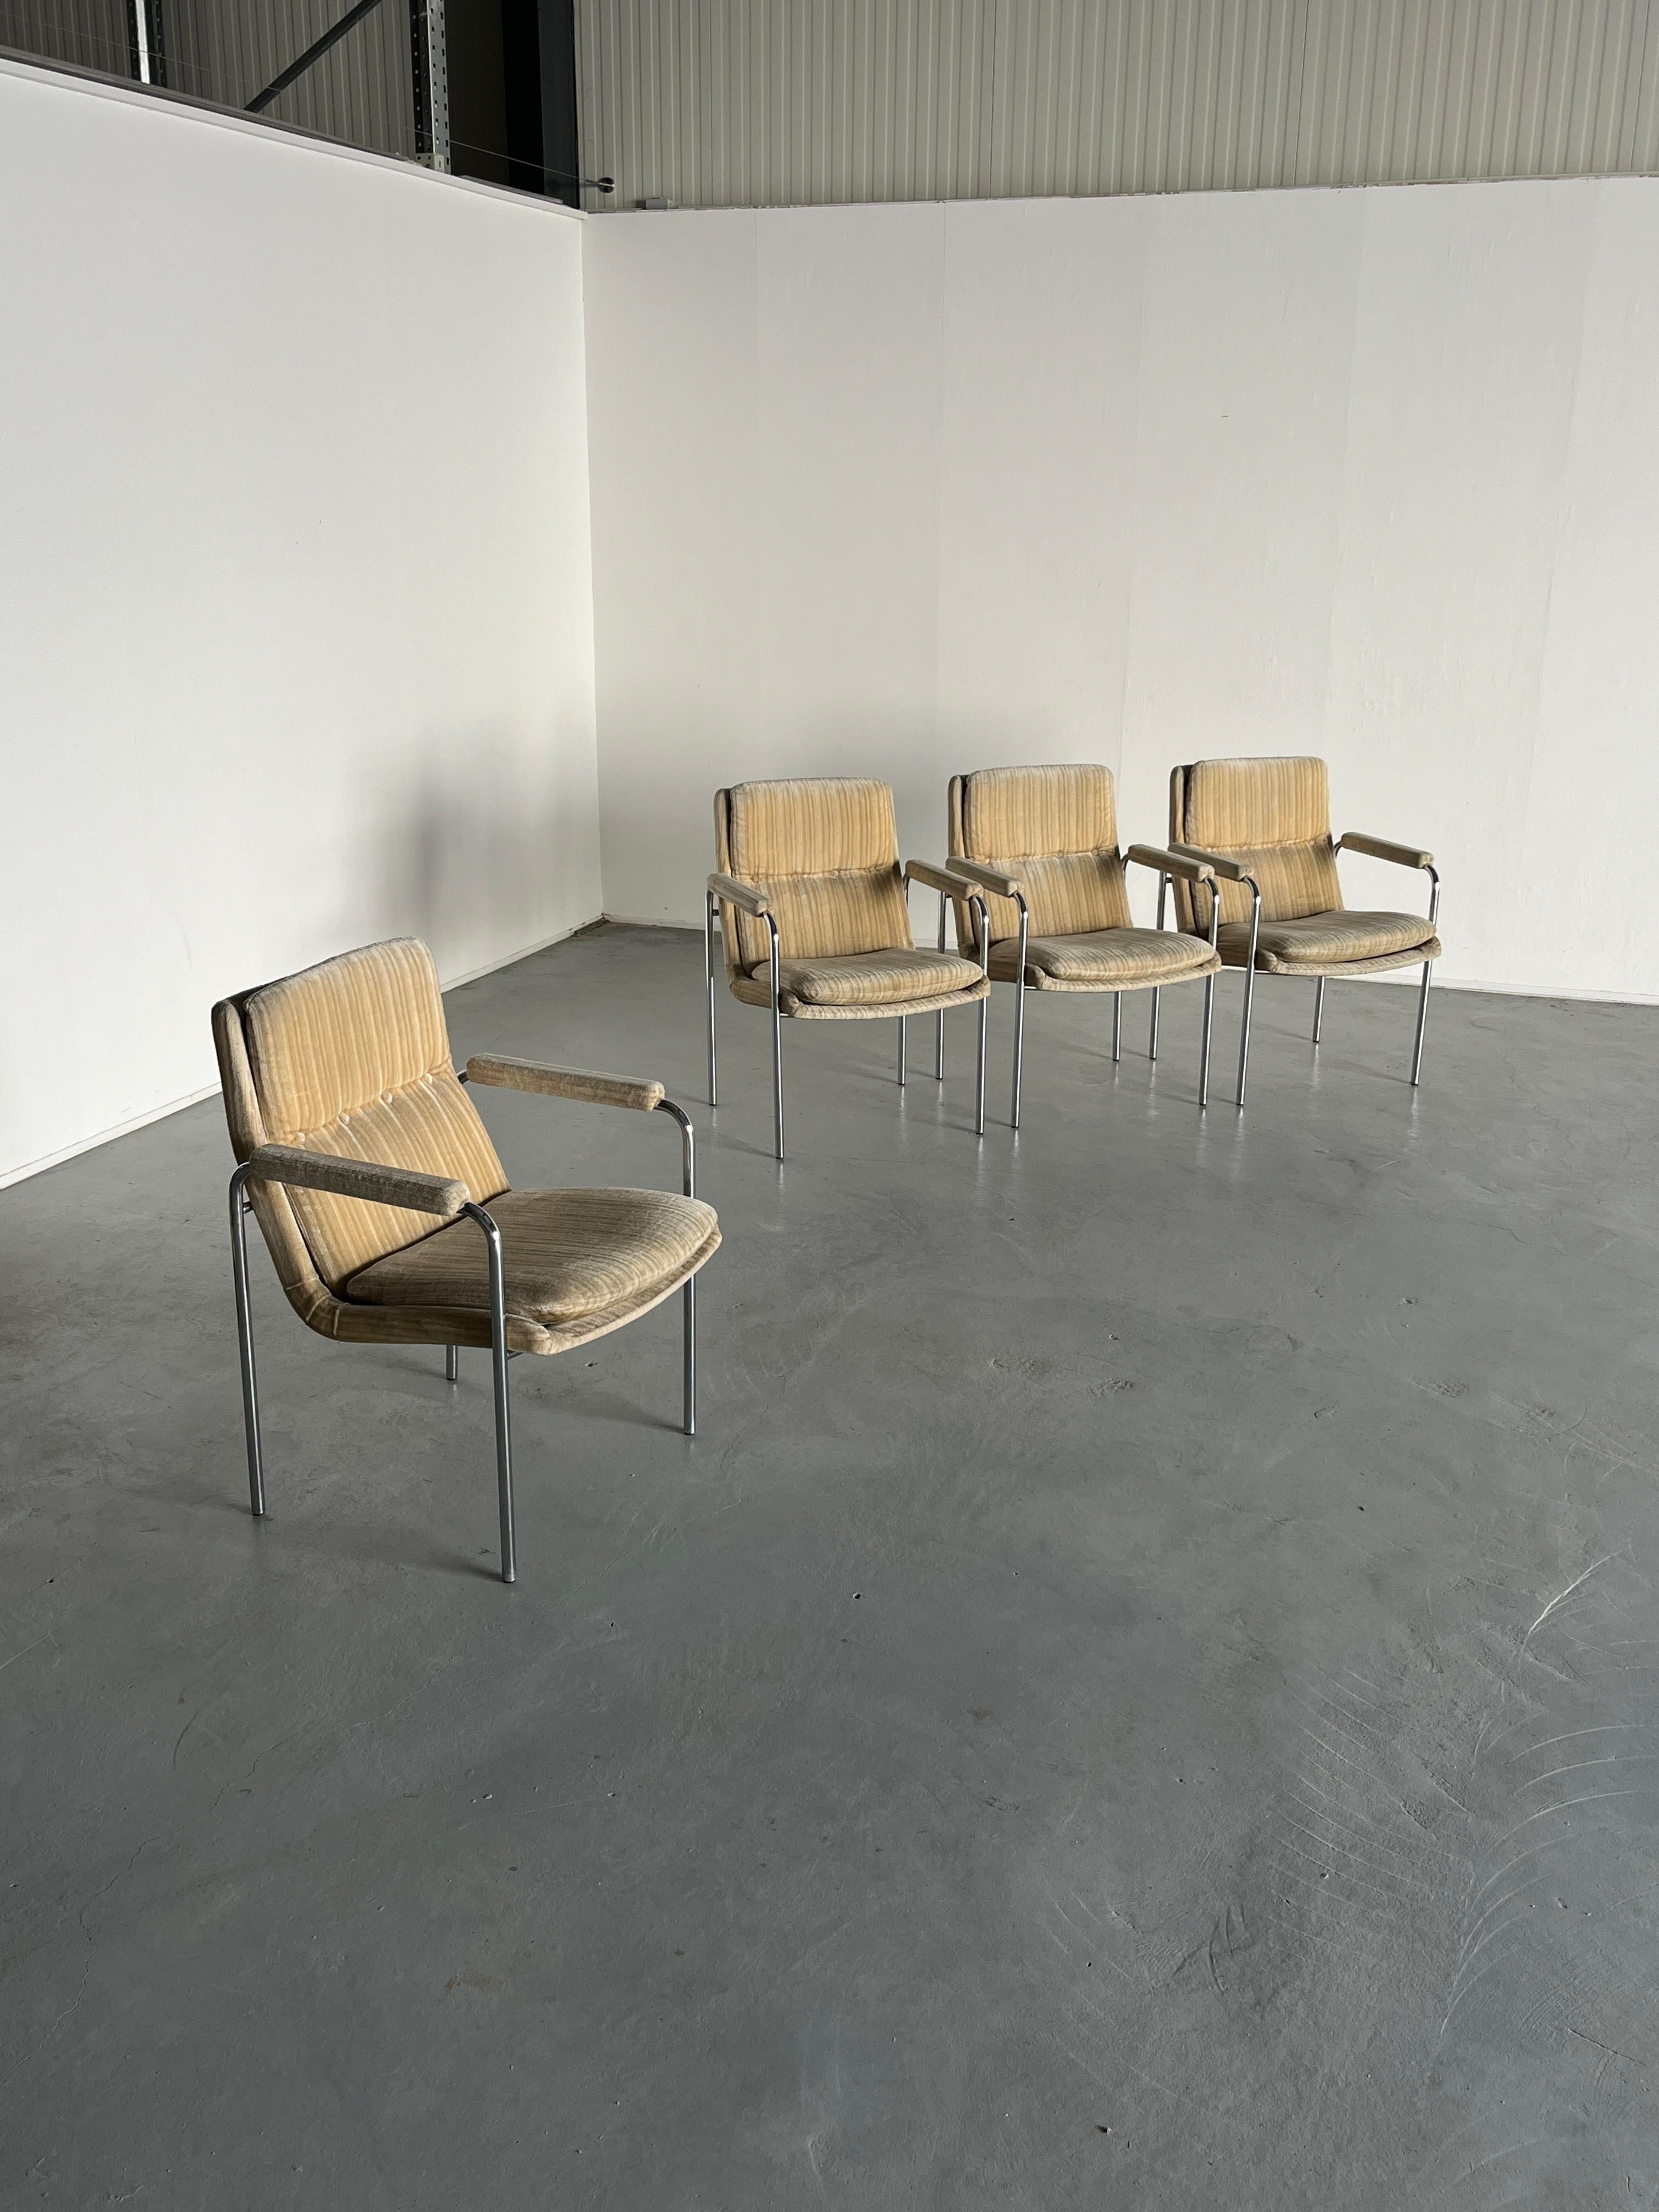 Quatre fauteuils vintage confortables de style moderne du milieu du siècle, avec une structure en métal chromé et une assise tapissée beige.
Peut être utilisé comme chaise de salle à manger, chaise longue ou chaise d'appoint.

Dans l'ensemble en bon